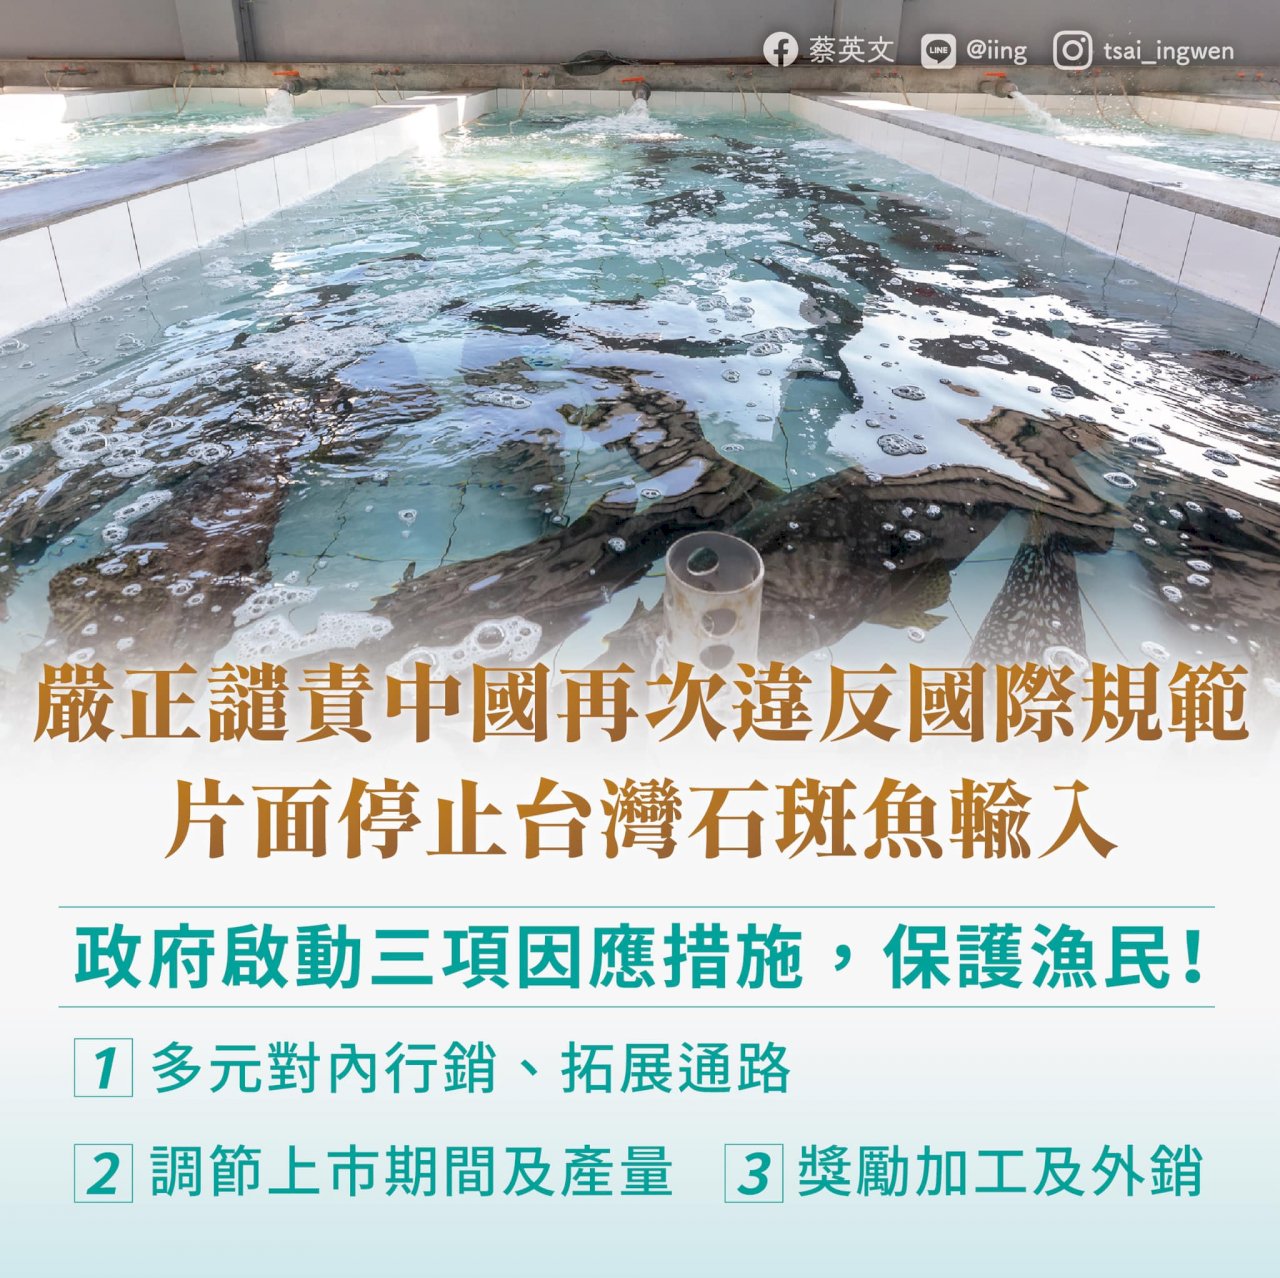 中國禁台石斑魚  蔡總統譴責片面傷害兩岸關係